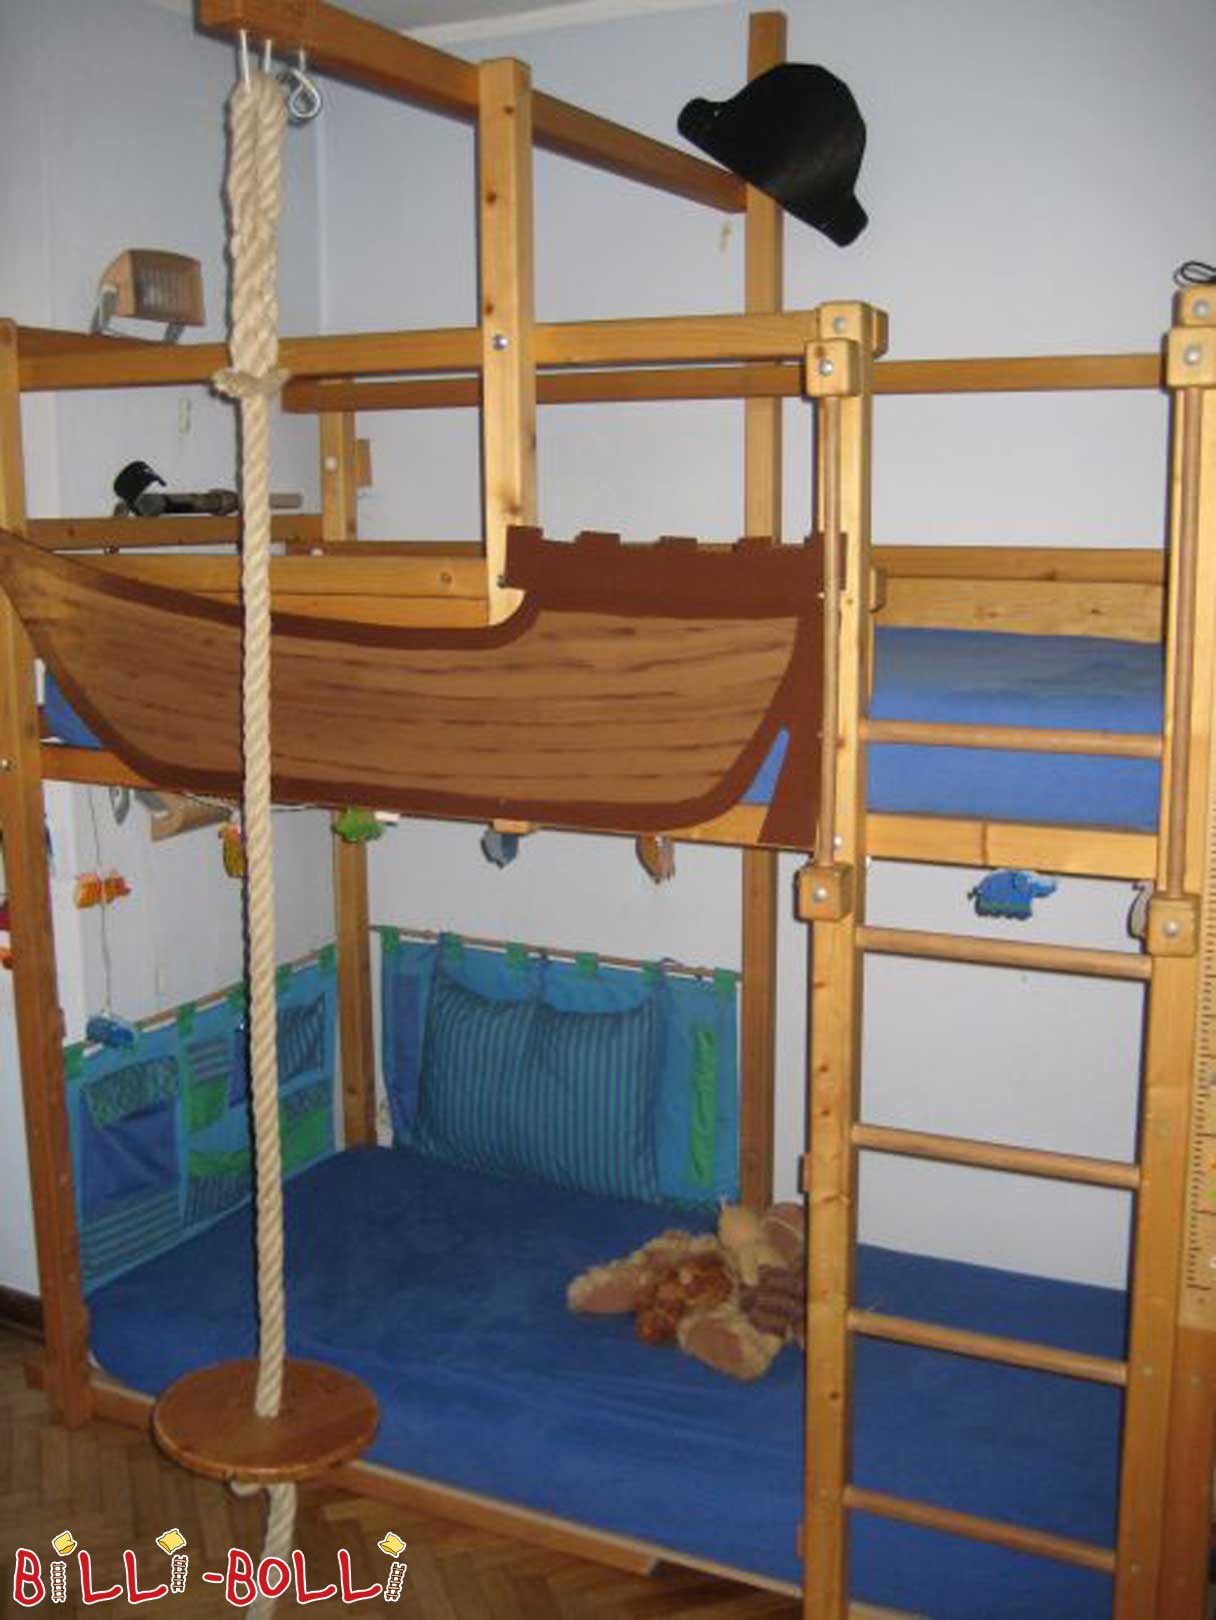 Billi-Bolli podkrovná posteľ, ktorá rastie s dieťaťom (Kategória: Použitá vysoká posteľ)